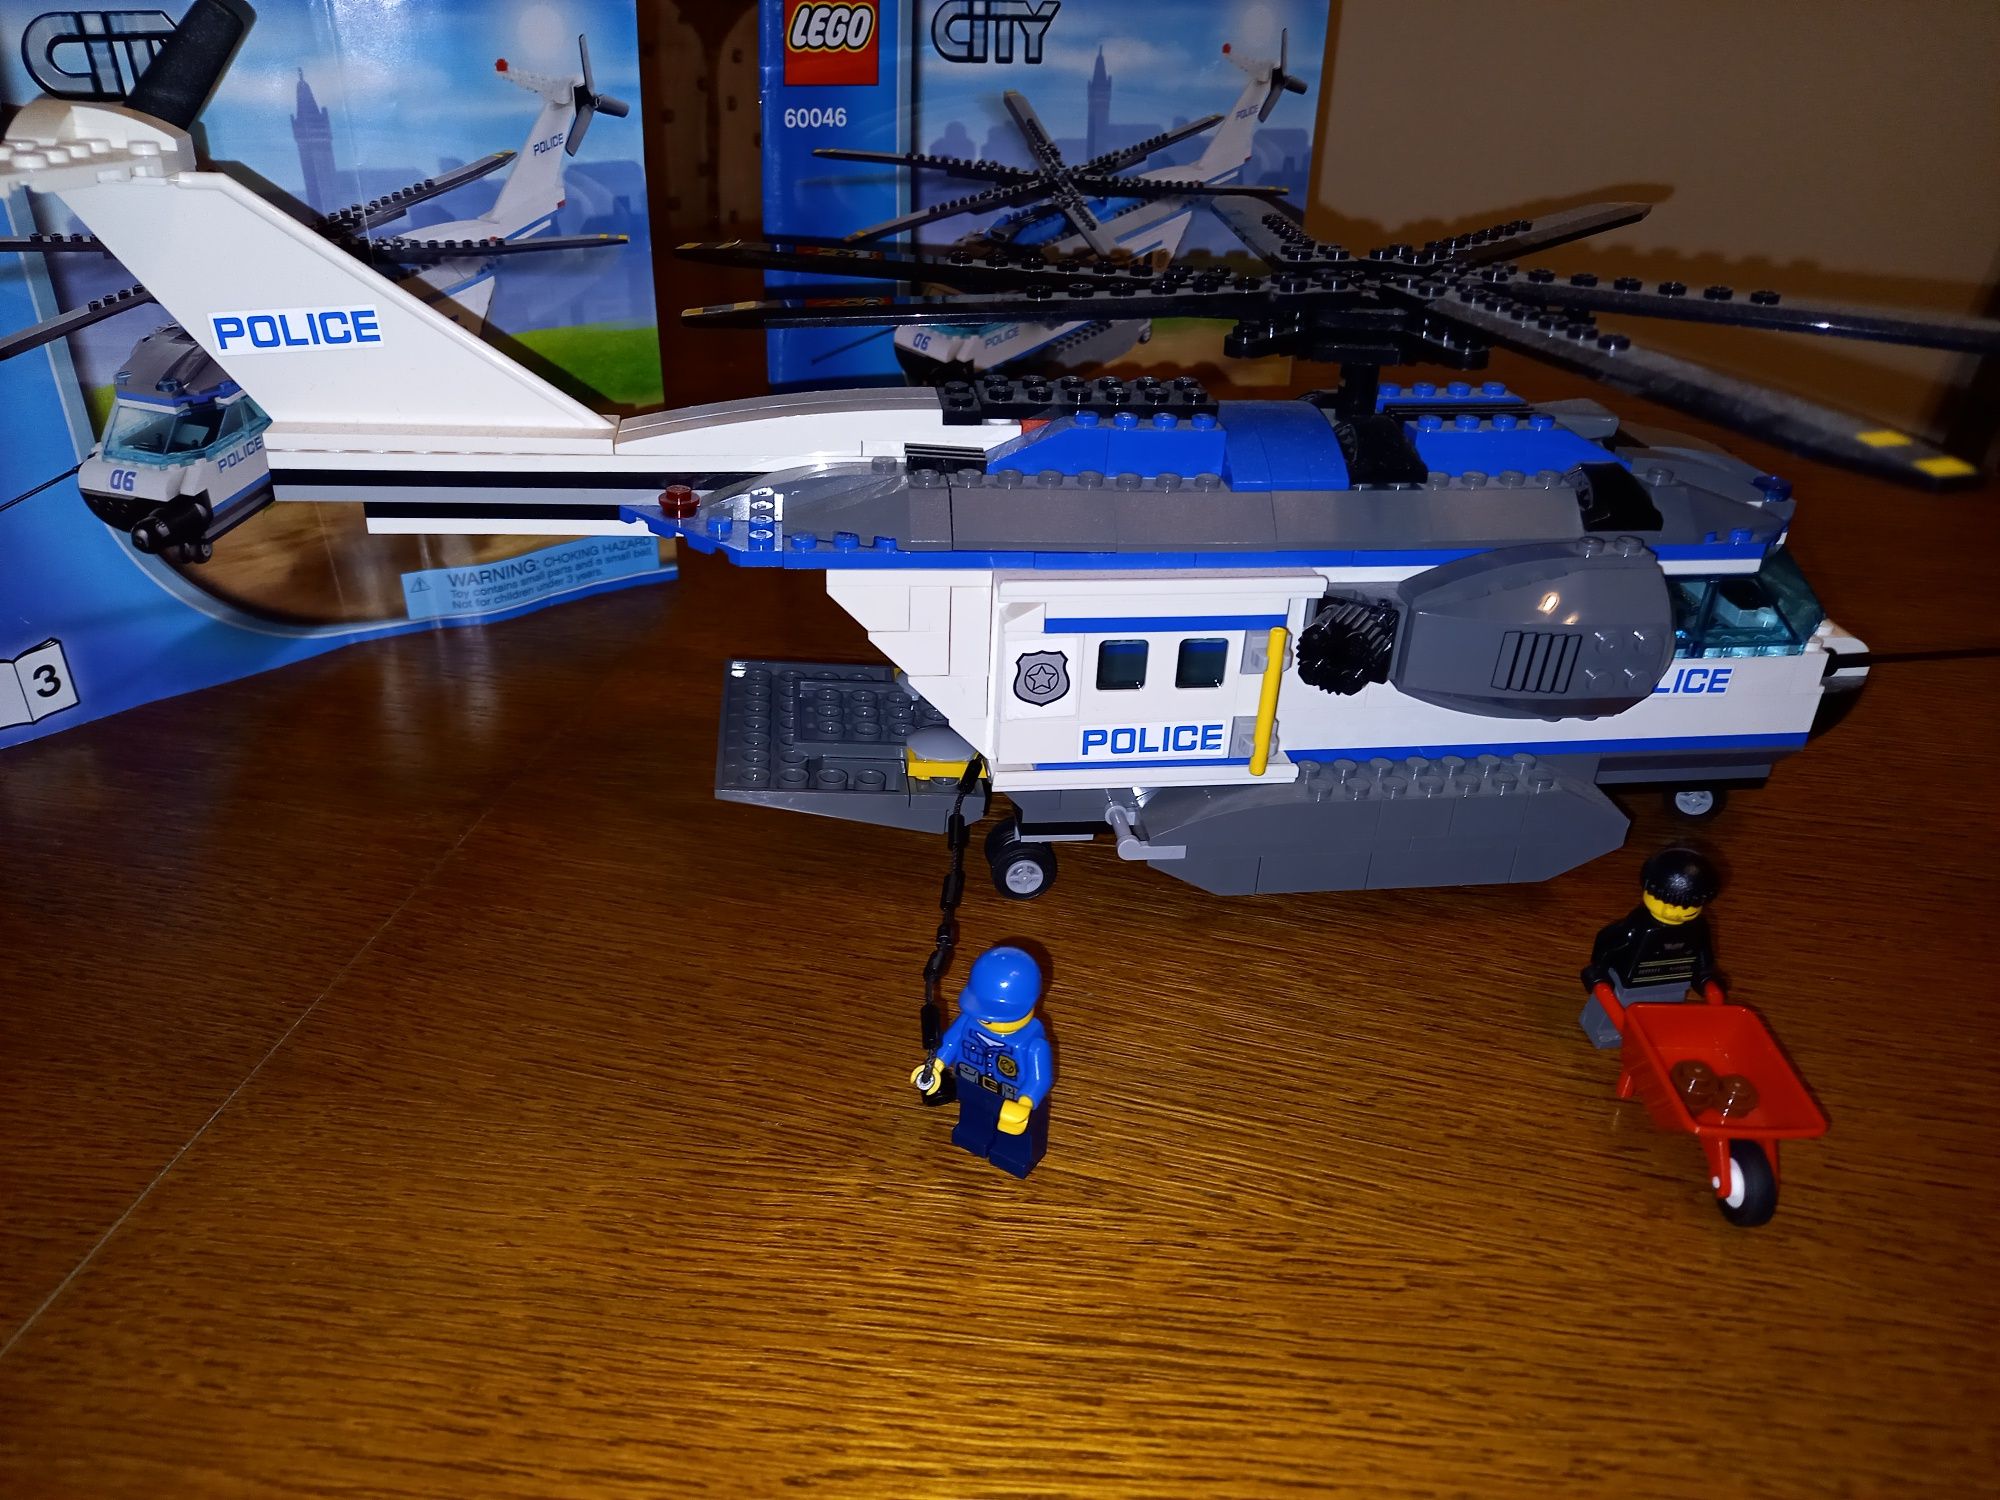 Helikopter Policja Lego